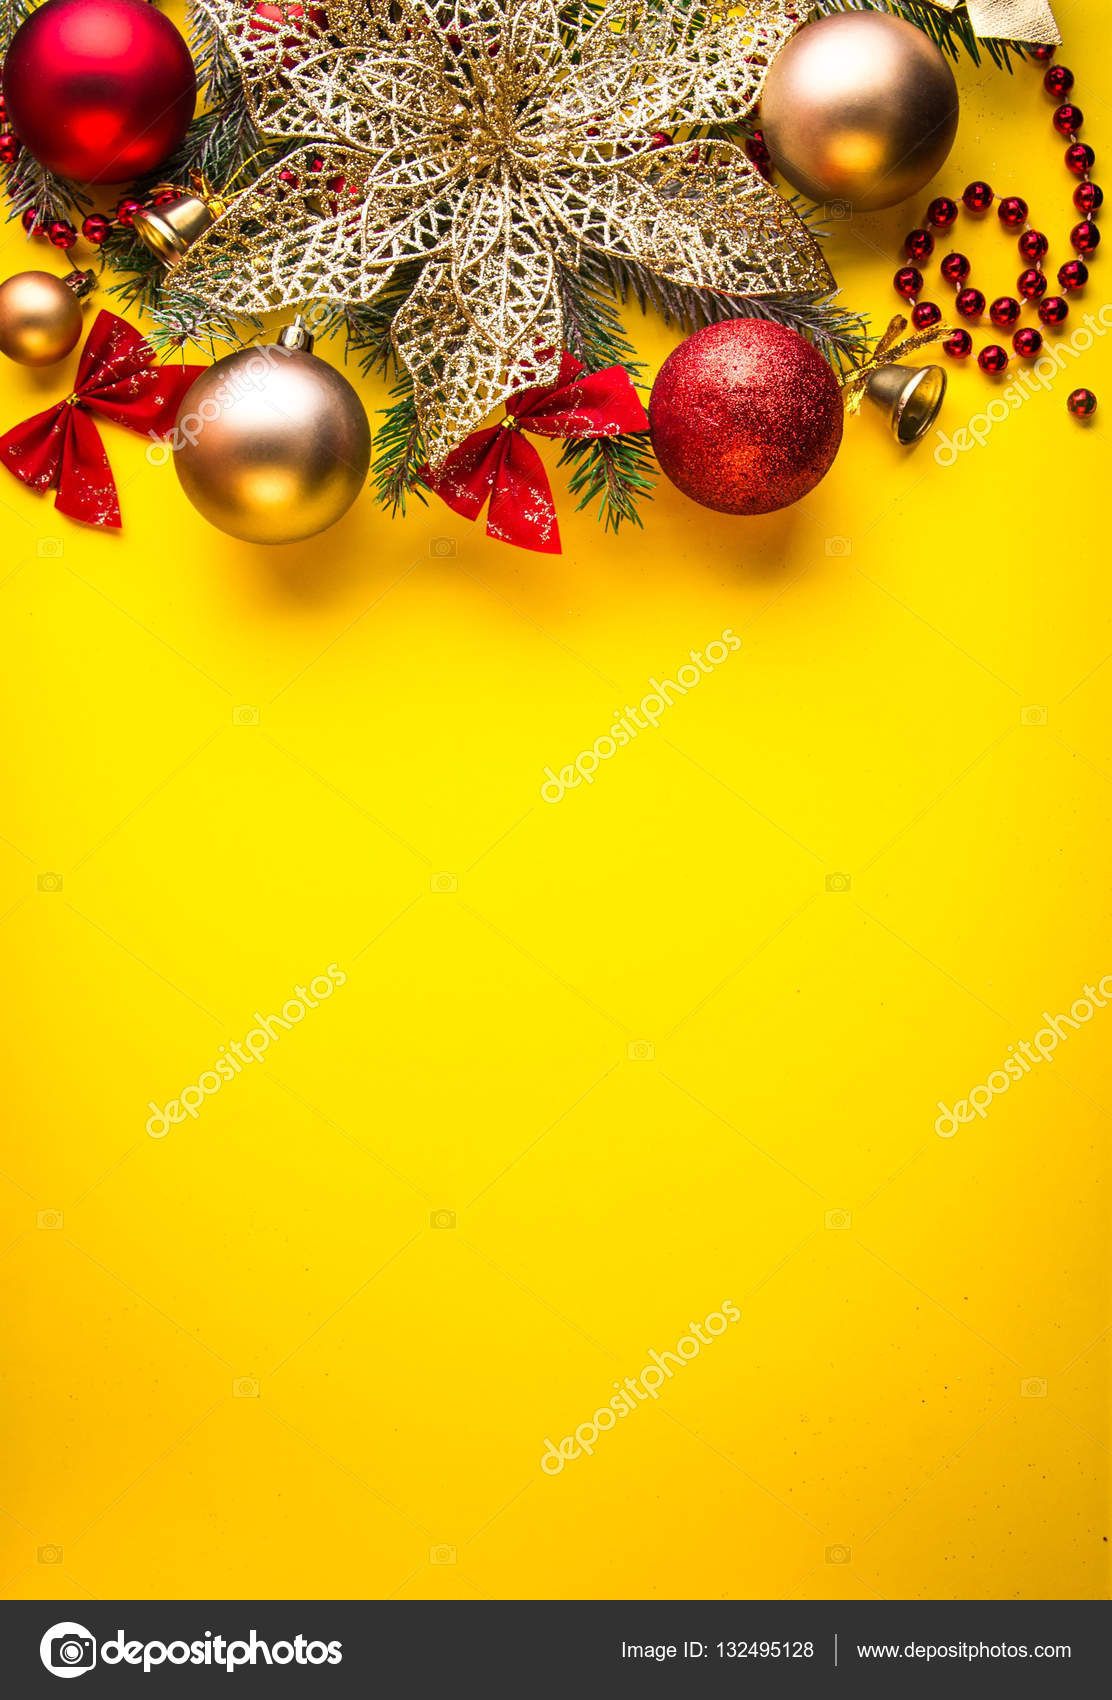 Sự đẹp tuyệt vời của màu vàng trong phong cách Giáng sinh đang chờ đón bạn. Hình nền Giáng sinh màu vàng sẽ mang đến cho bạn một cảm giác yêu đời và lạc quan. Hãy nhấn vào ảnh để khám phá nền trang trí Giáng sinh đẹp nhất mà bạn từng thấy.